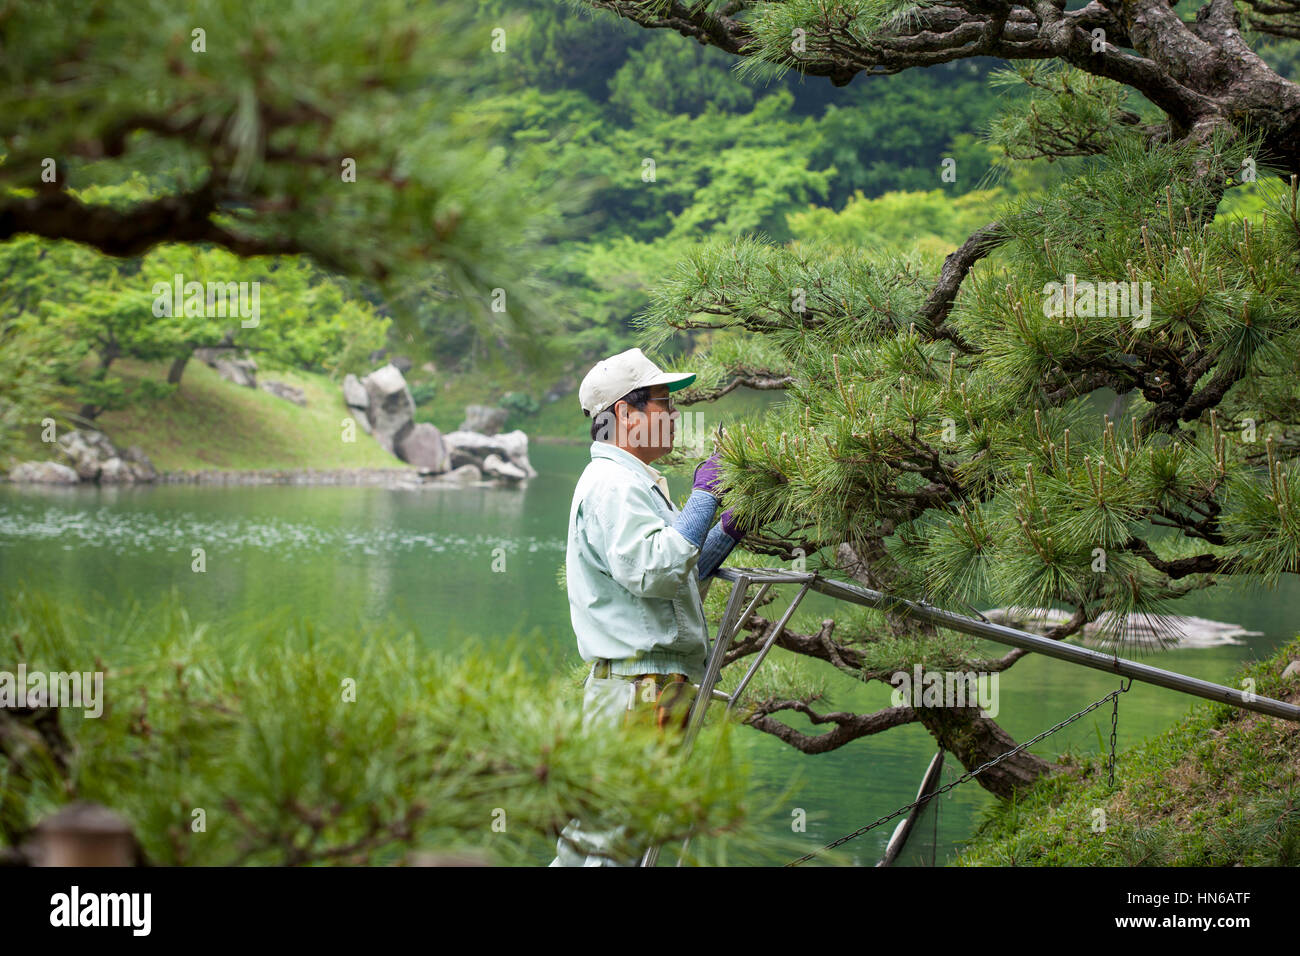 TAKAMATSU, JAPON - 8 mai : un jardinier pruneaux un pin d'ornement dans les jardins, Ritsurin Takamatsu, Japon, le 8 mai 2012. Ritsurin est un jardin paysager Banque D'Images